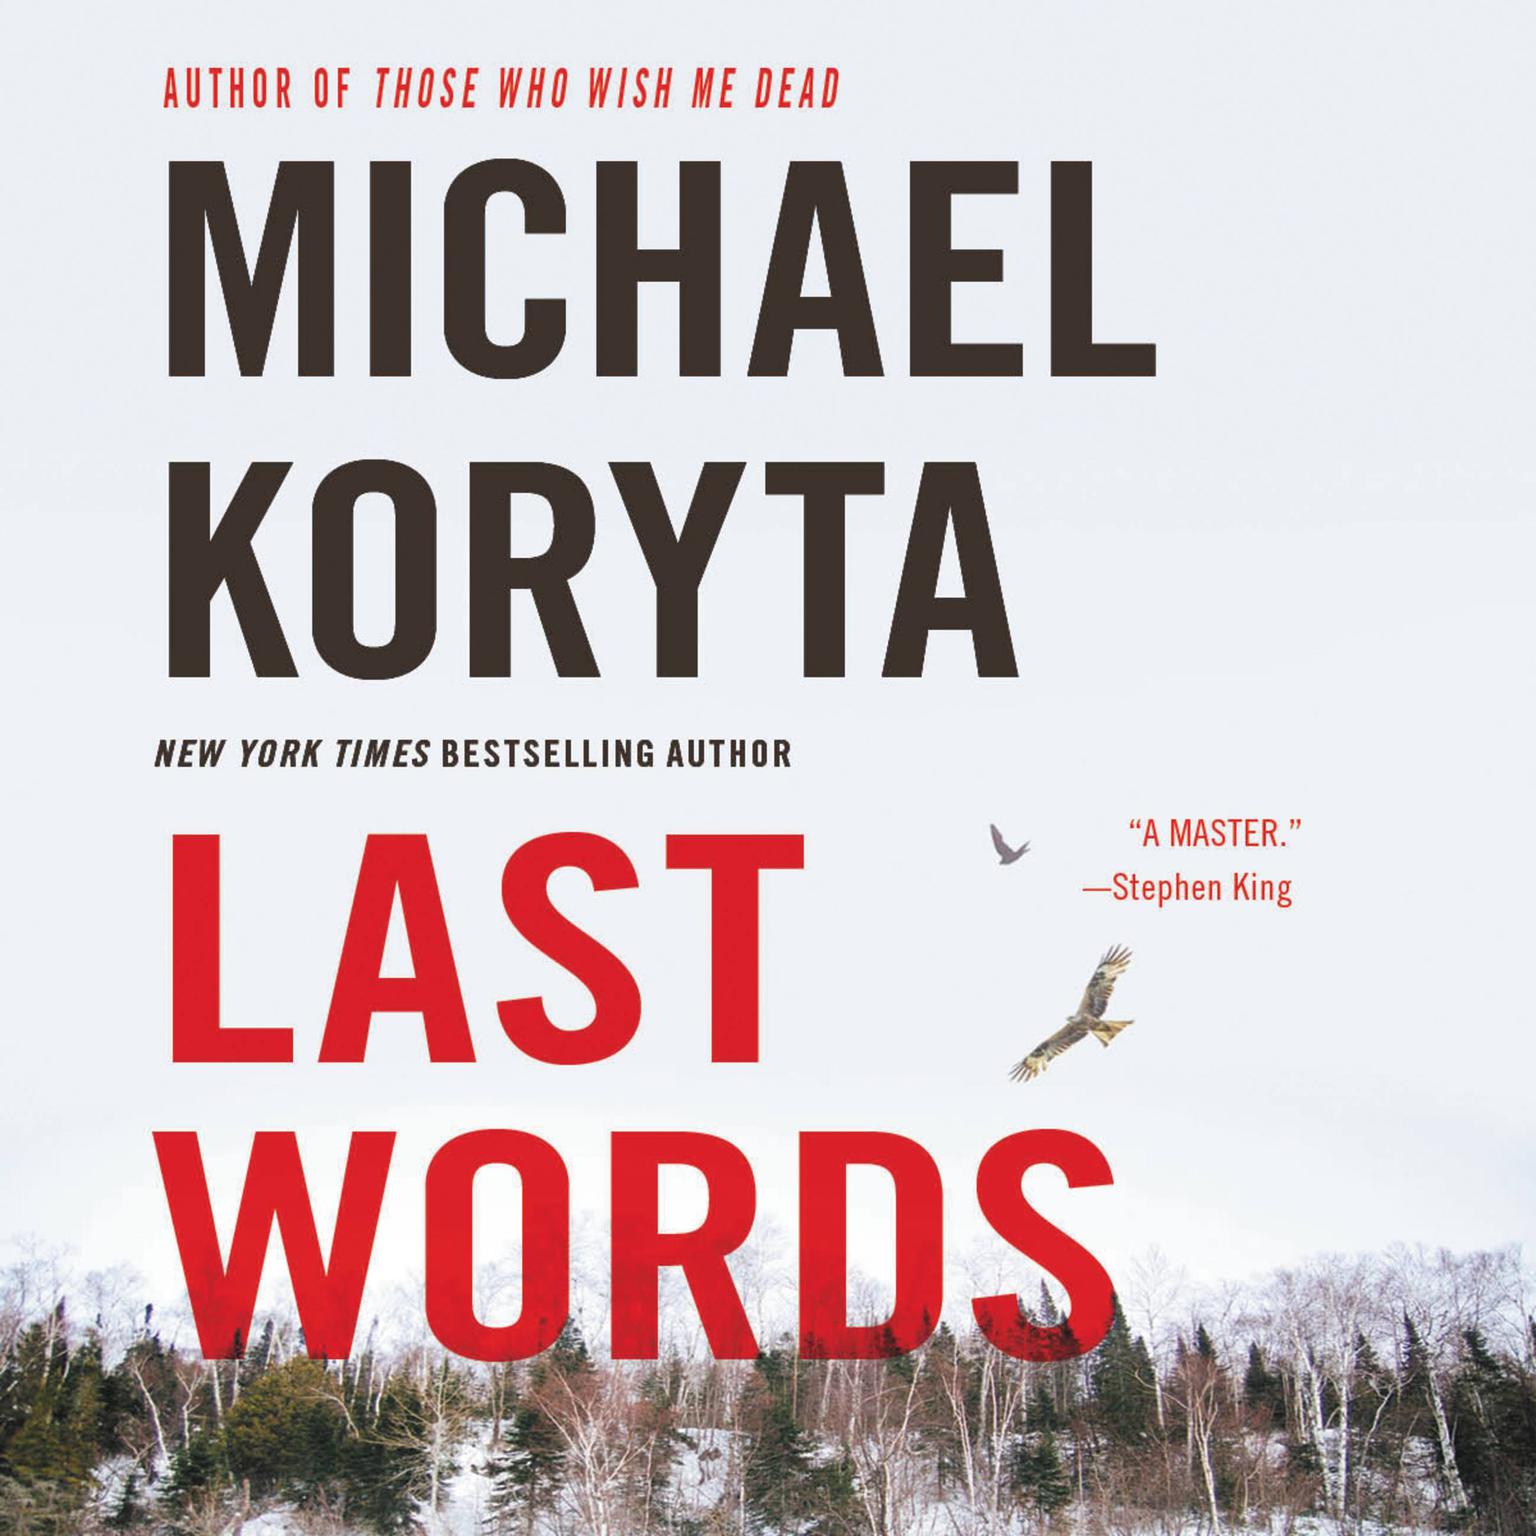 Last Words Audiobook, by Michael Koryta